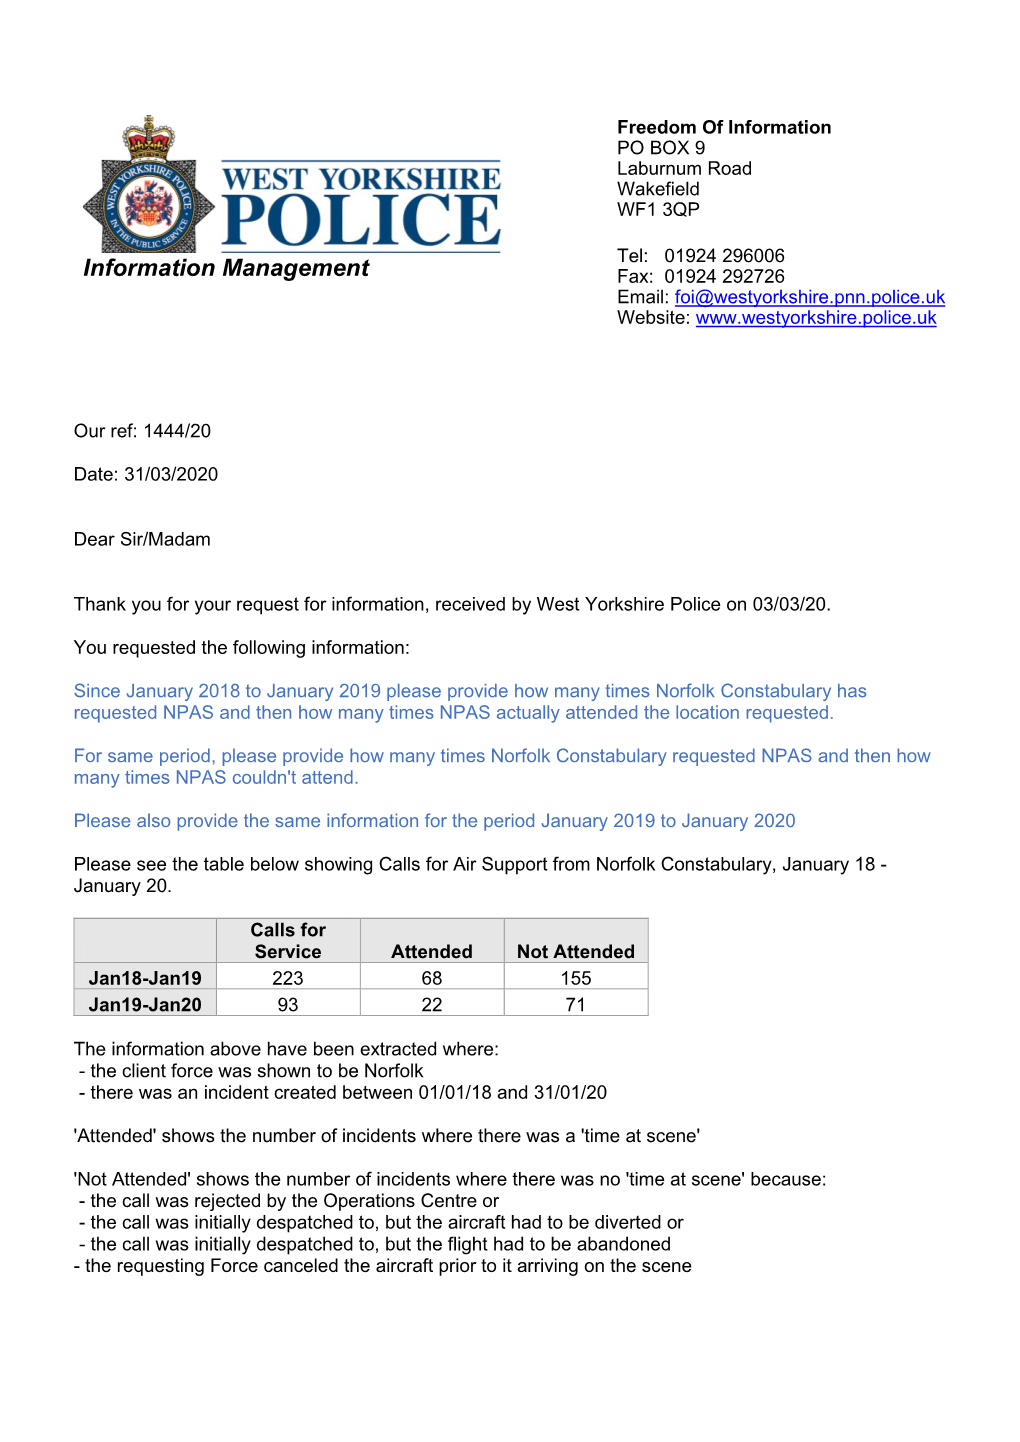 Information Management Fax: 01924 292726 Email: Foi@Westyorkshire.Pnn.Police.Uk Website